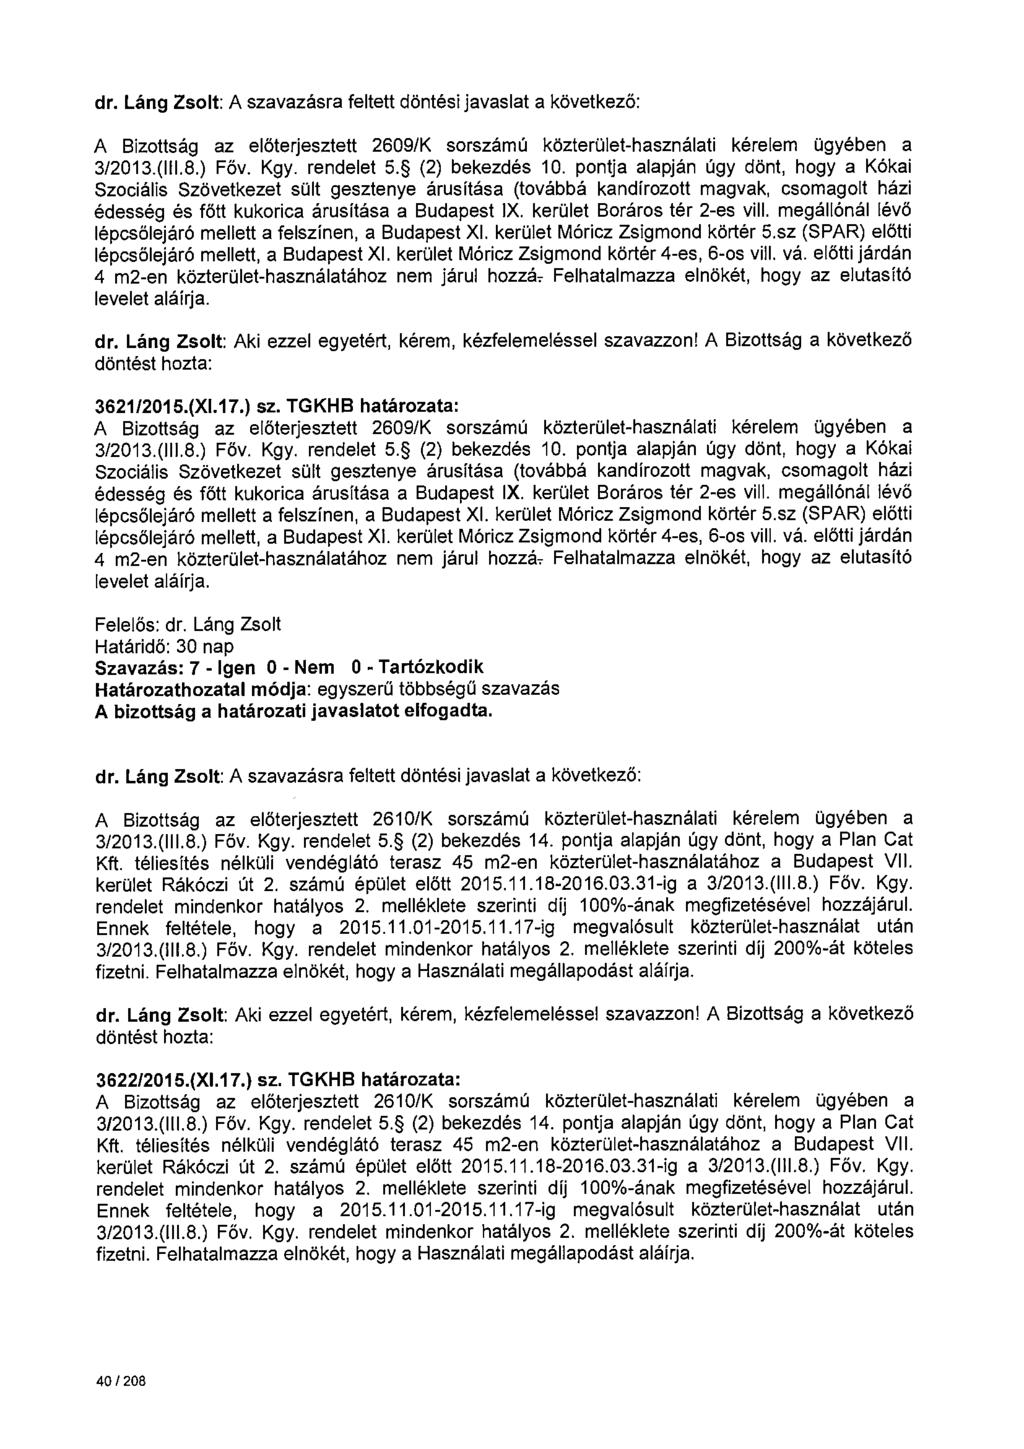 A Bizottság az előterjesztett 2609/K sorszámú közterület-használati kérelem ügyében a 3/2013.(111.8.) Főv. Kgy. rendelet 5. (2) bekezdés 10.